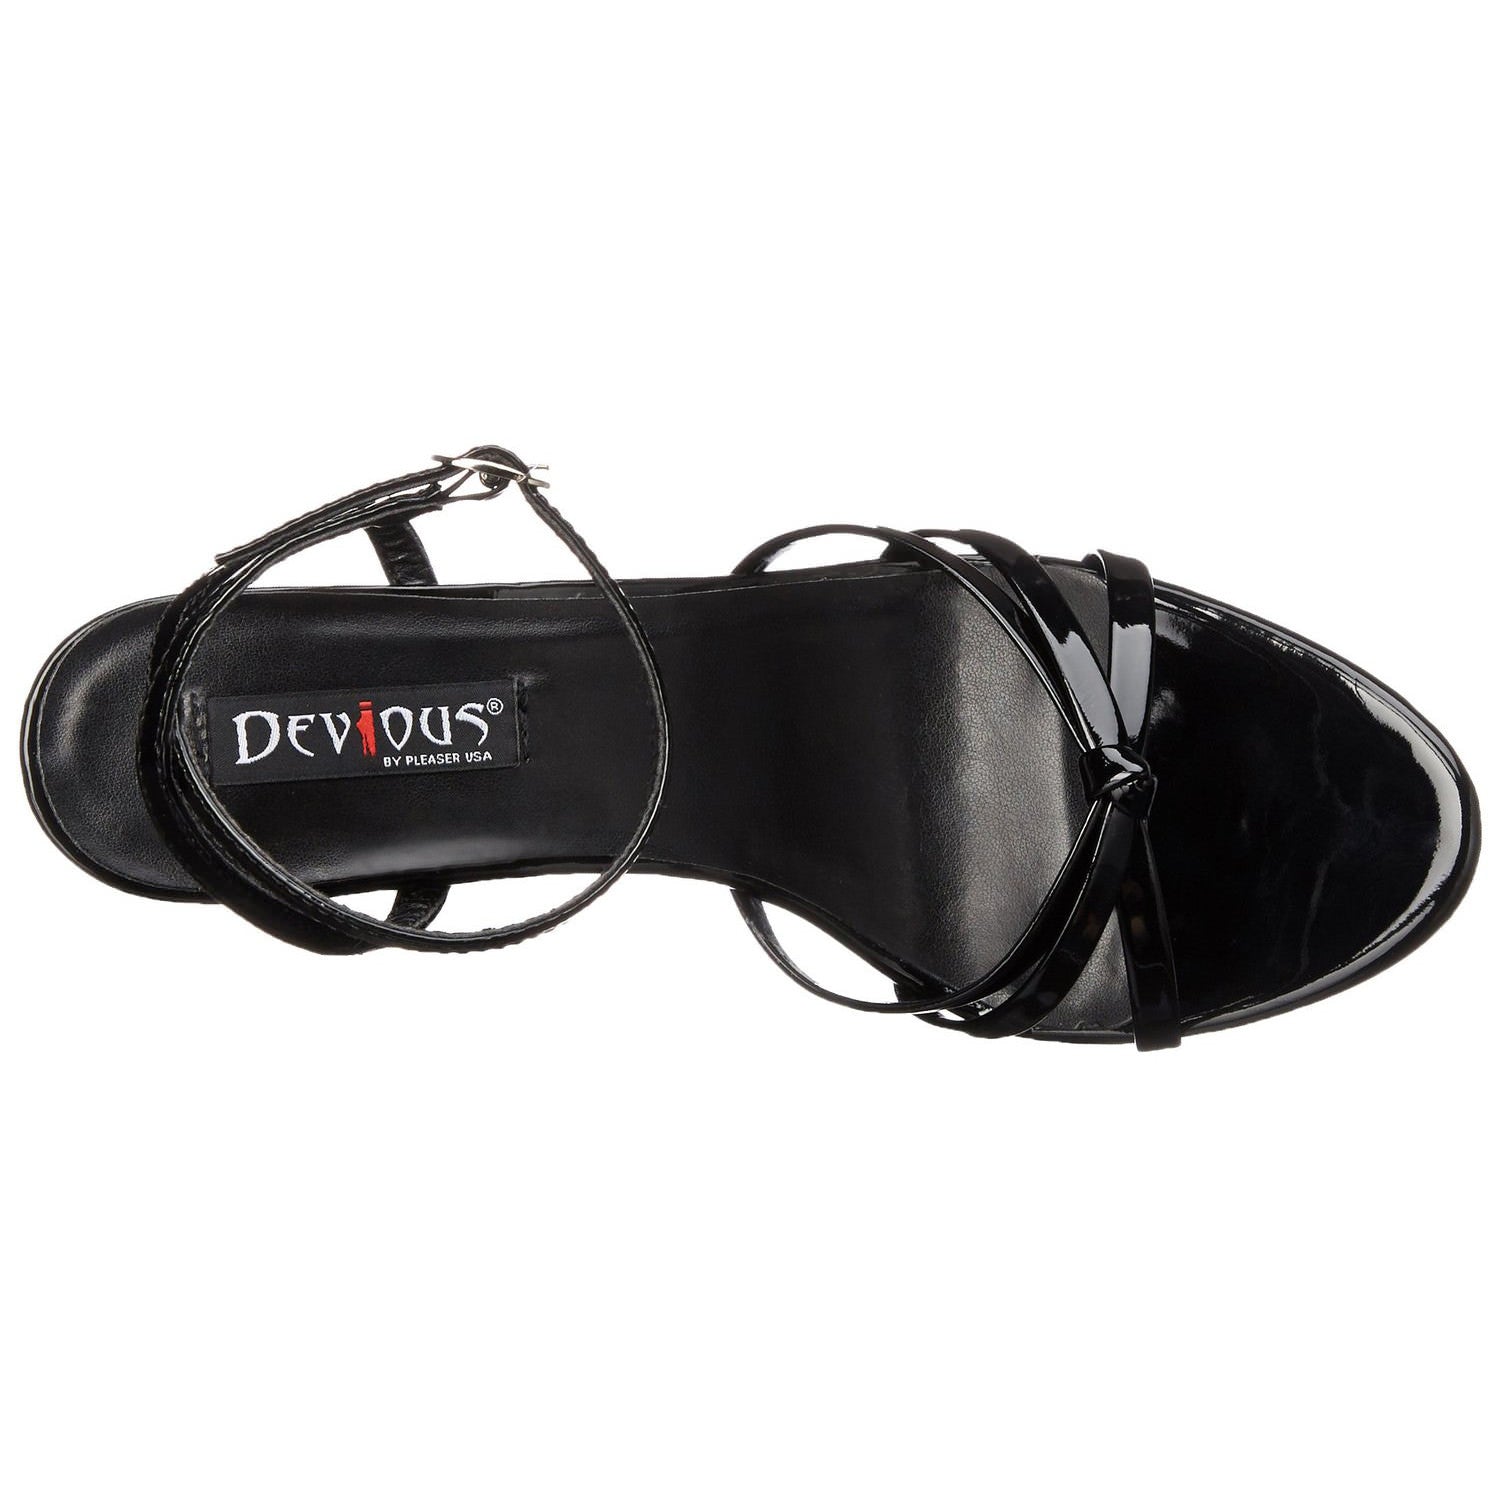 DEVIOUS DOMINA-108 Black Pat Ankle Strap Sandals - Shoecup.com - 7